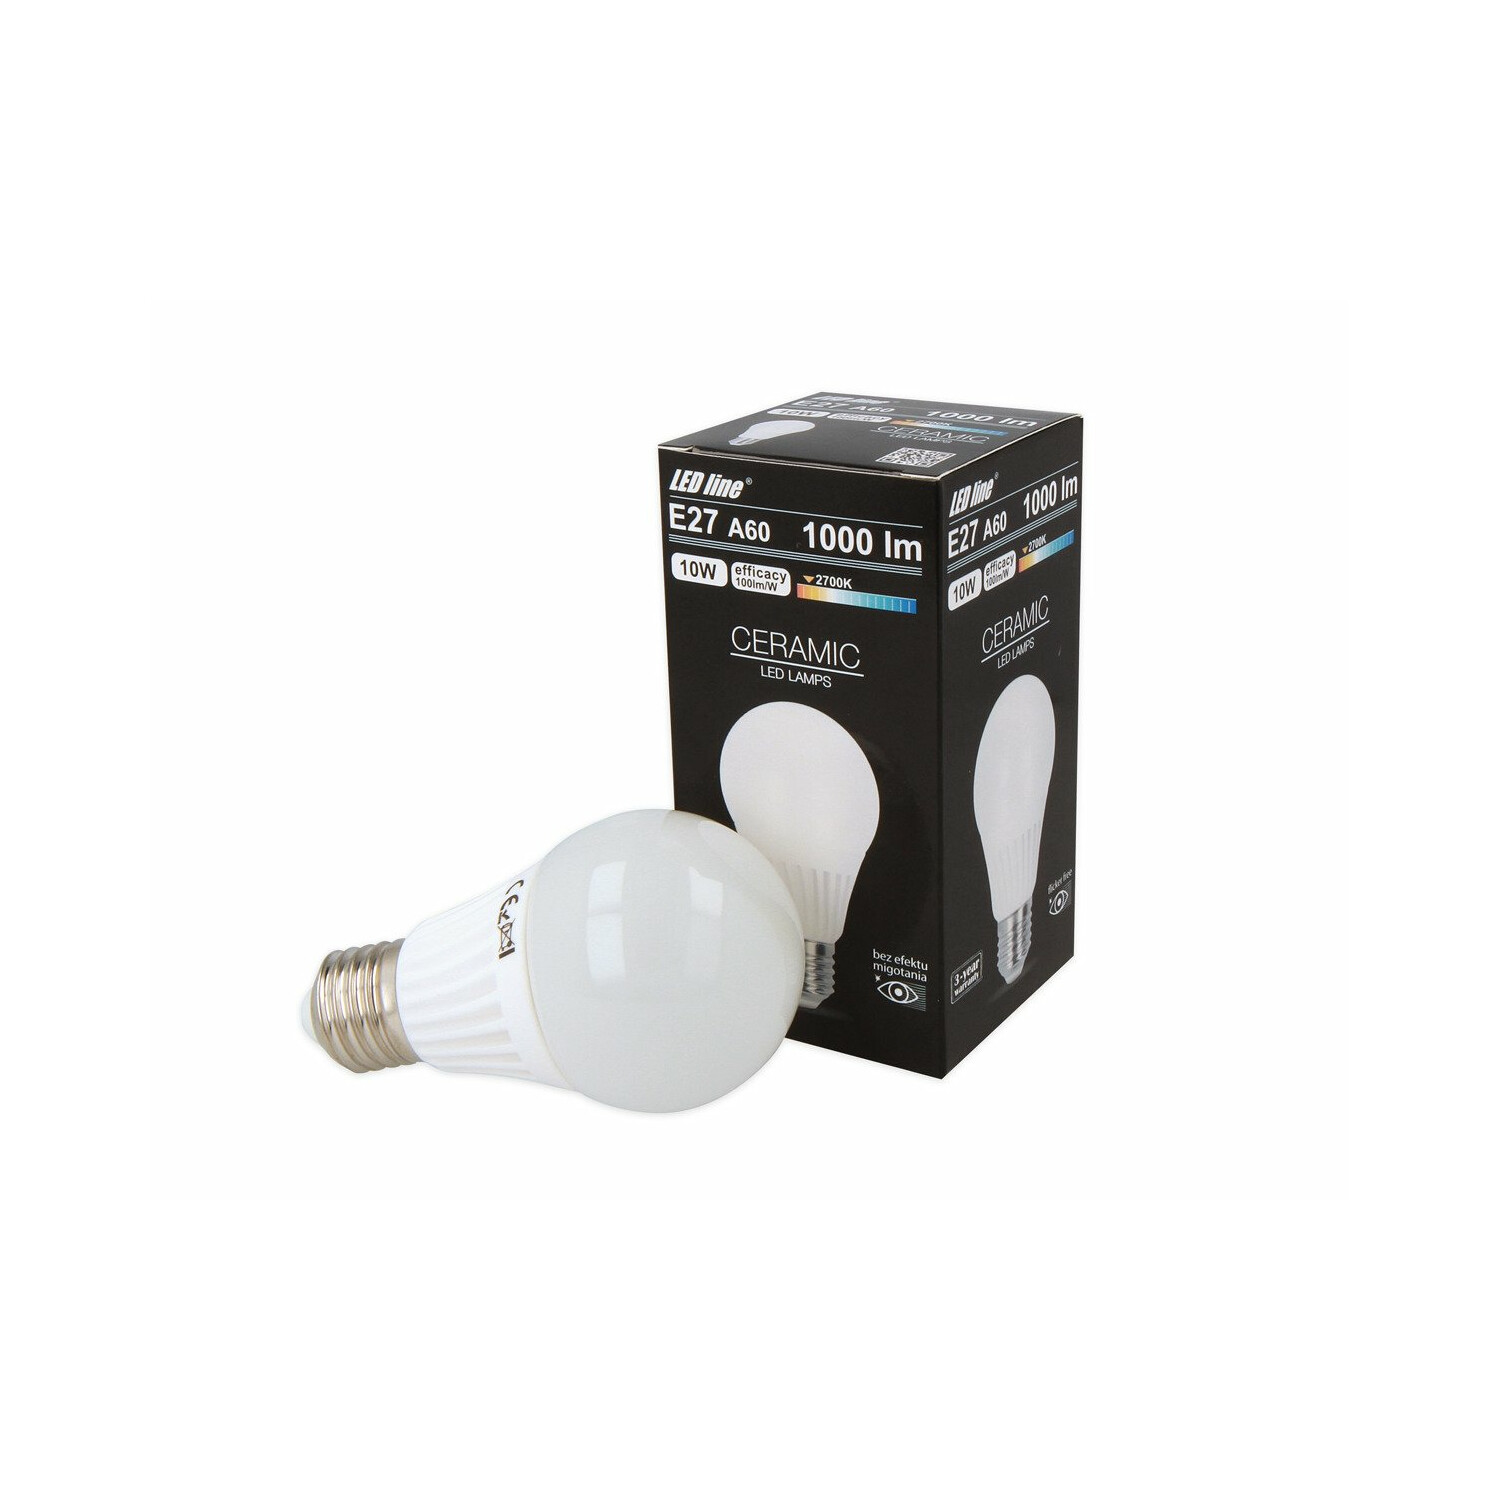 Leuchtmittel E27 Warmweiß LINE LED Ceramic lm 10W 1000 LED LED